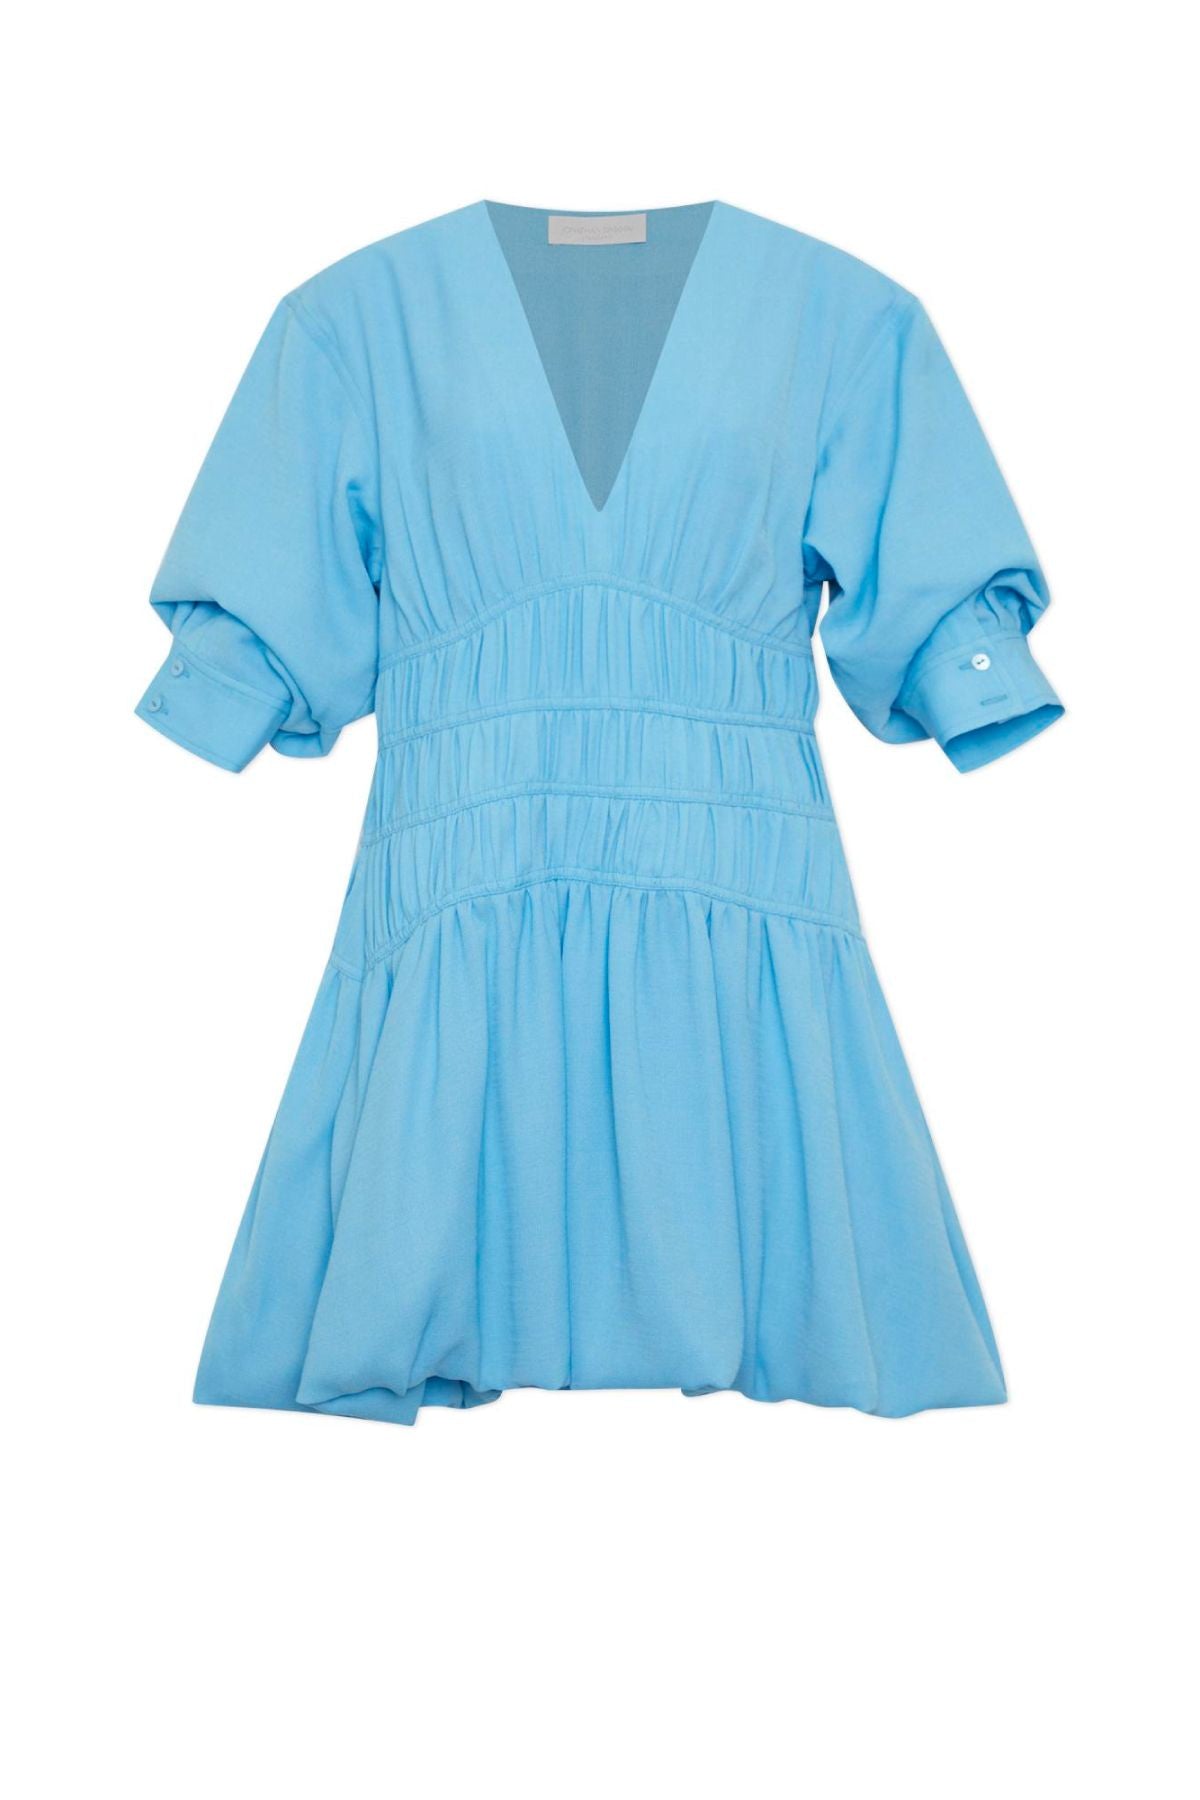 Simkhai Diem Mini Dress - Capri